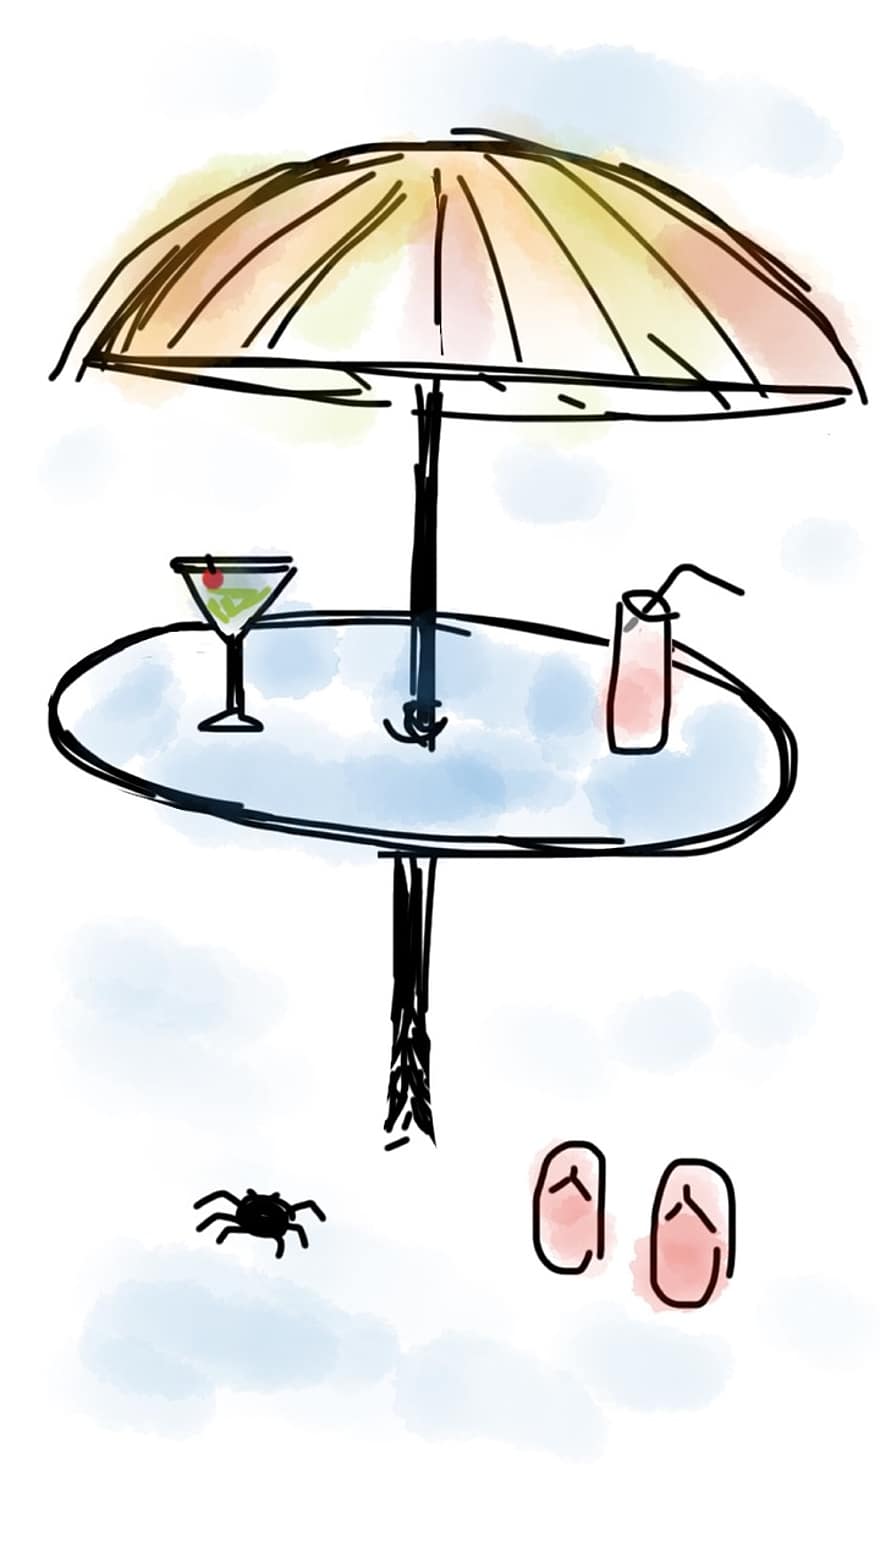 pantai, payung, minum, Martini, minuman ringan, meja, cerah, payung pantai, pasir, liburan, musim panas